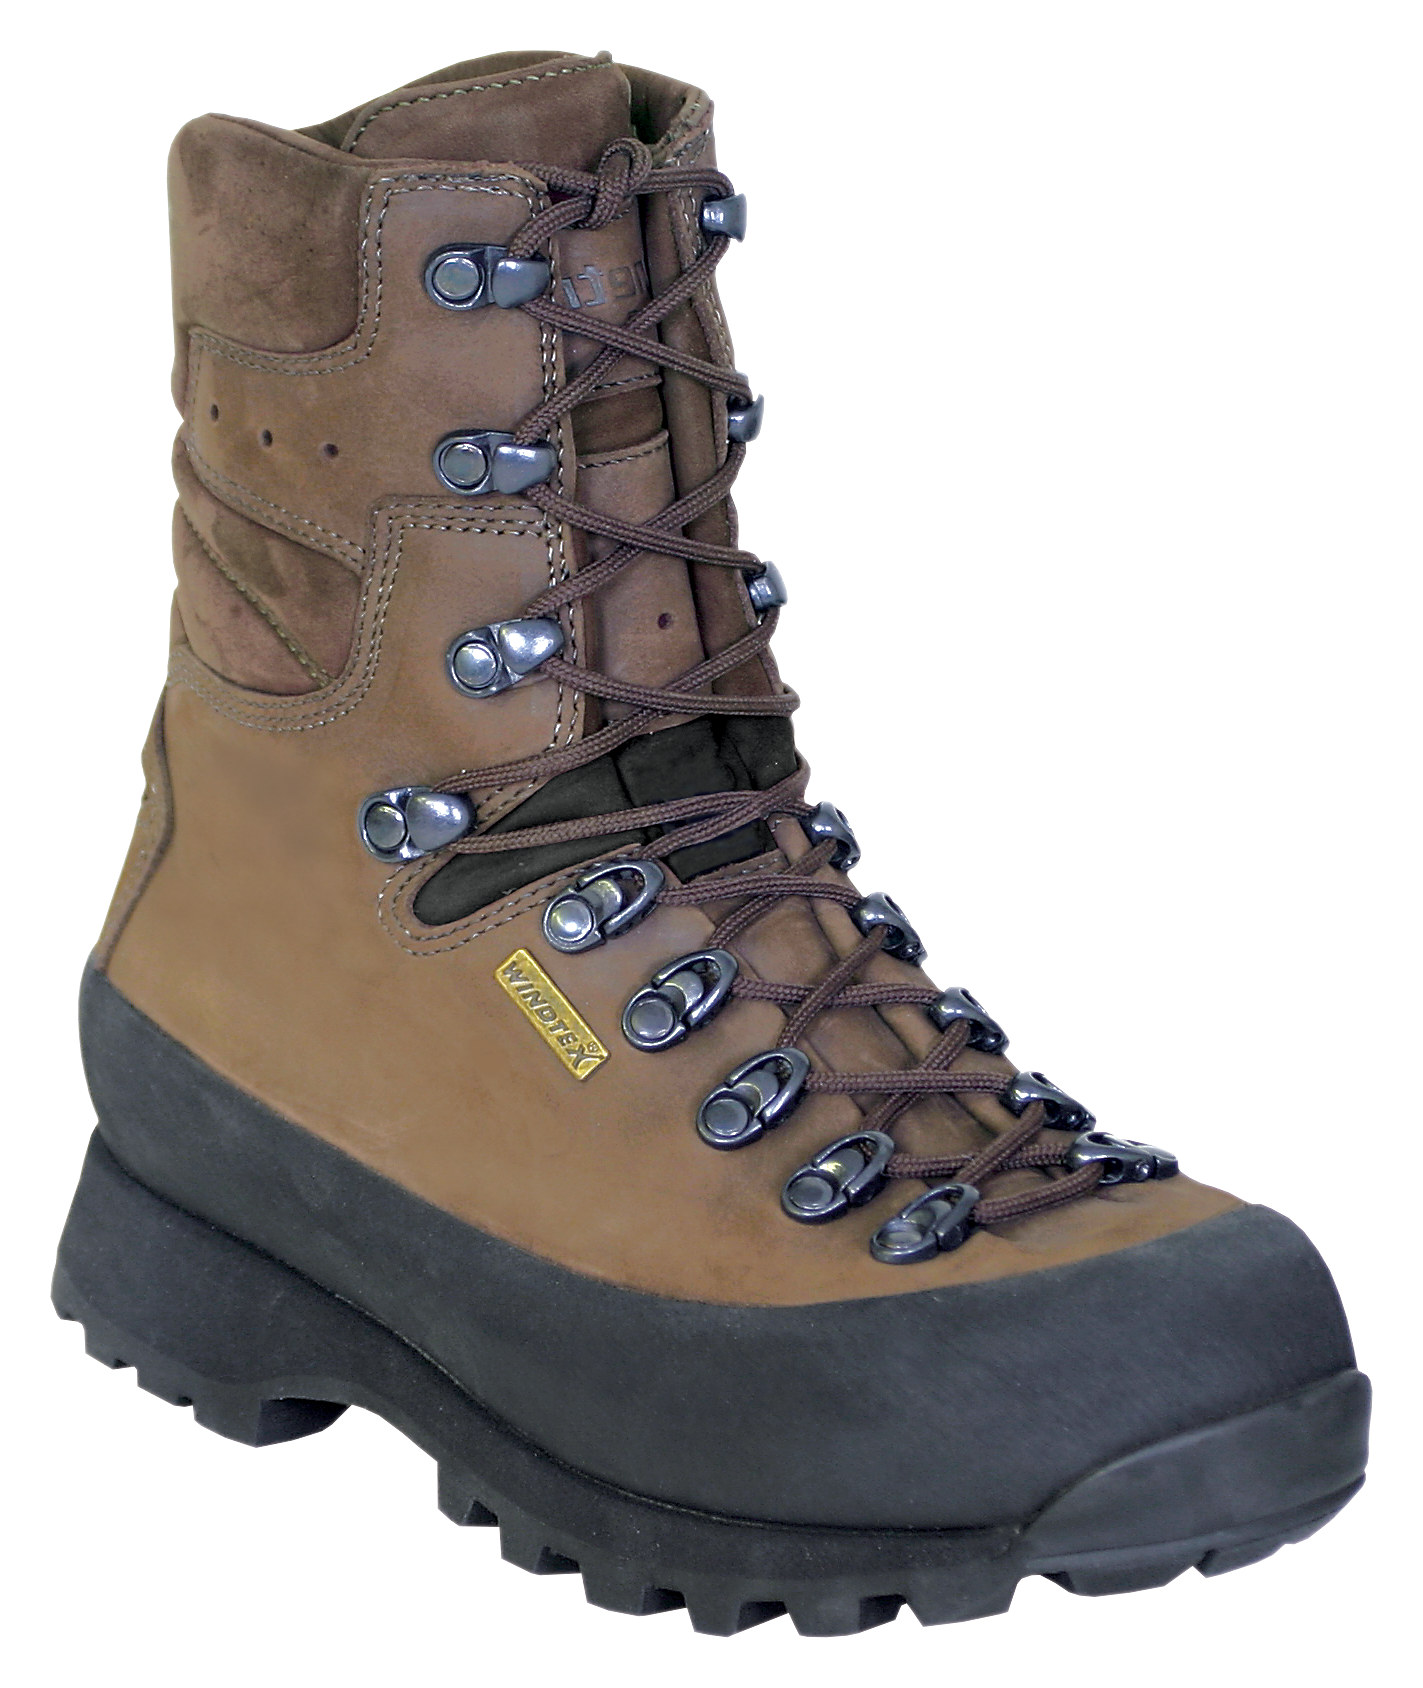 Kenetrek Hiker Waterproof Hiking Boots for Ladies - Brown -  7 5M